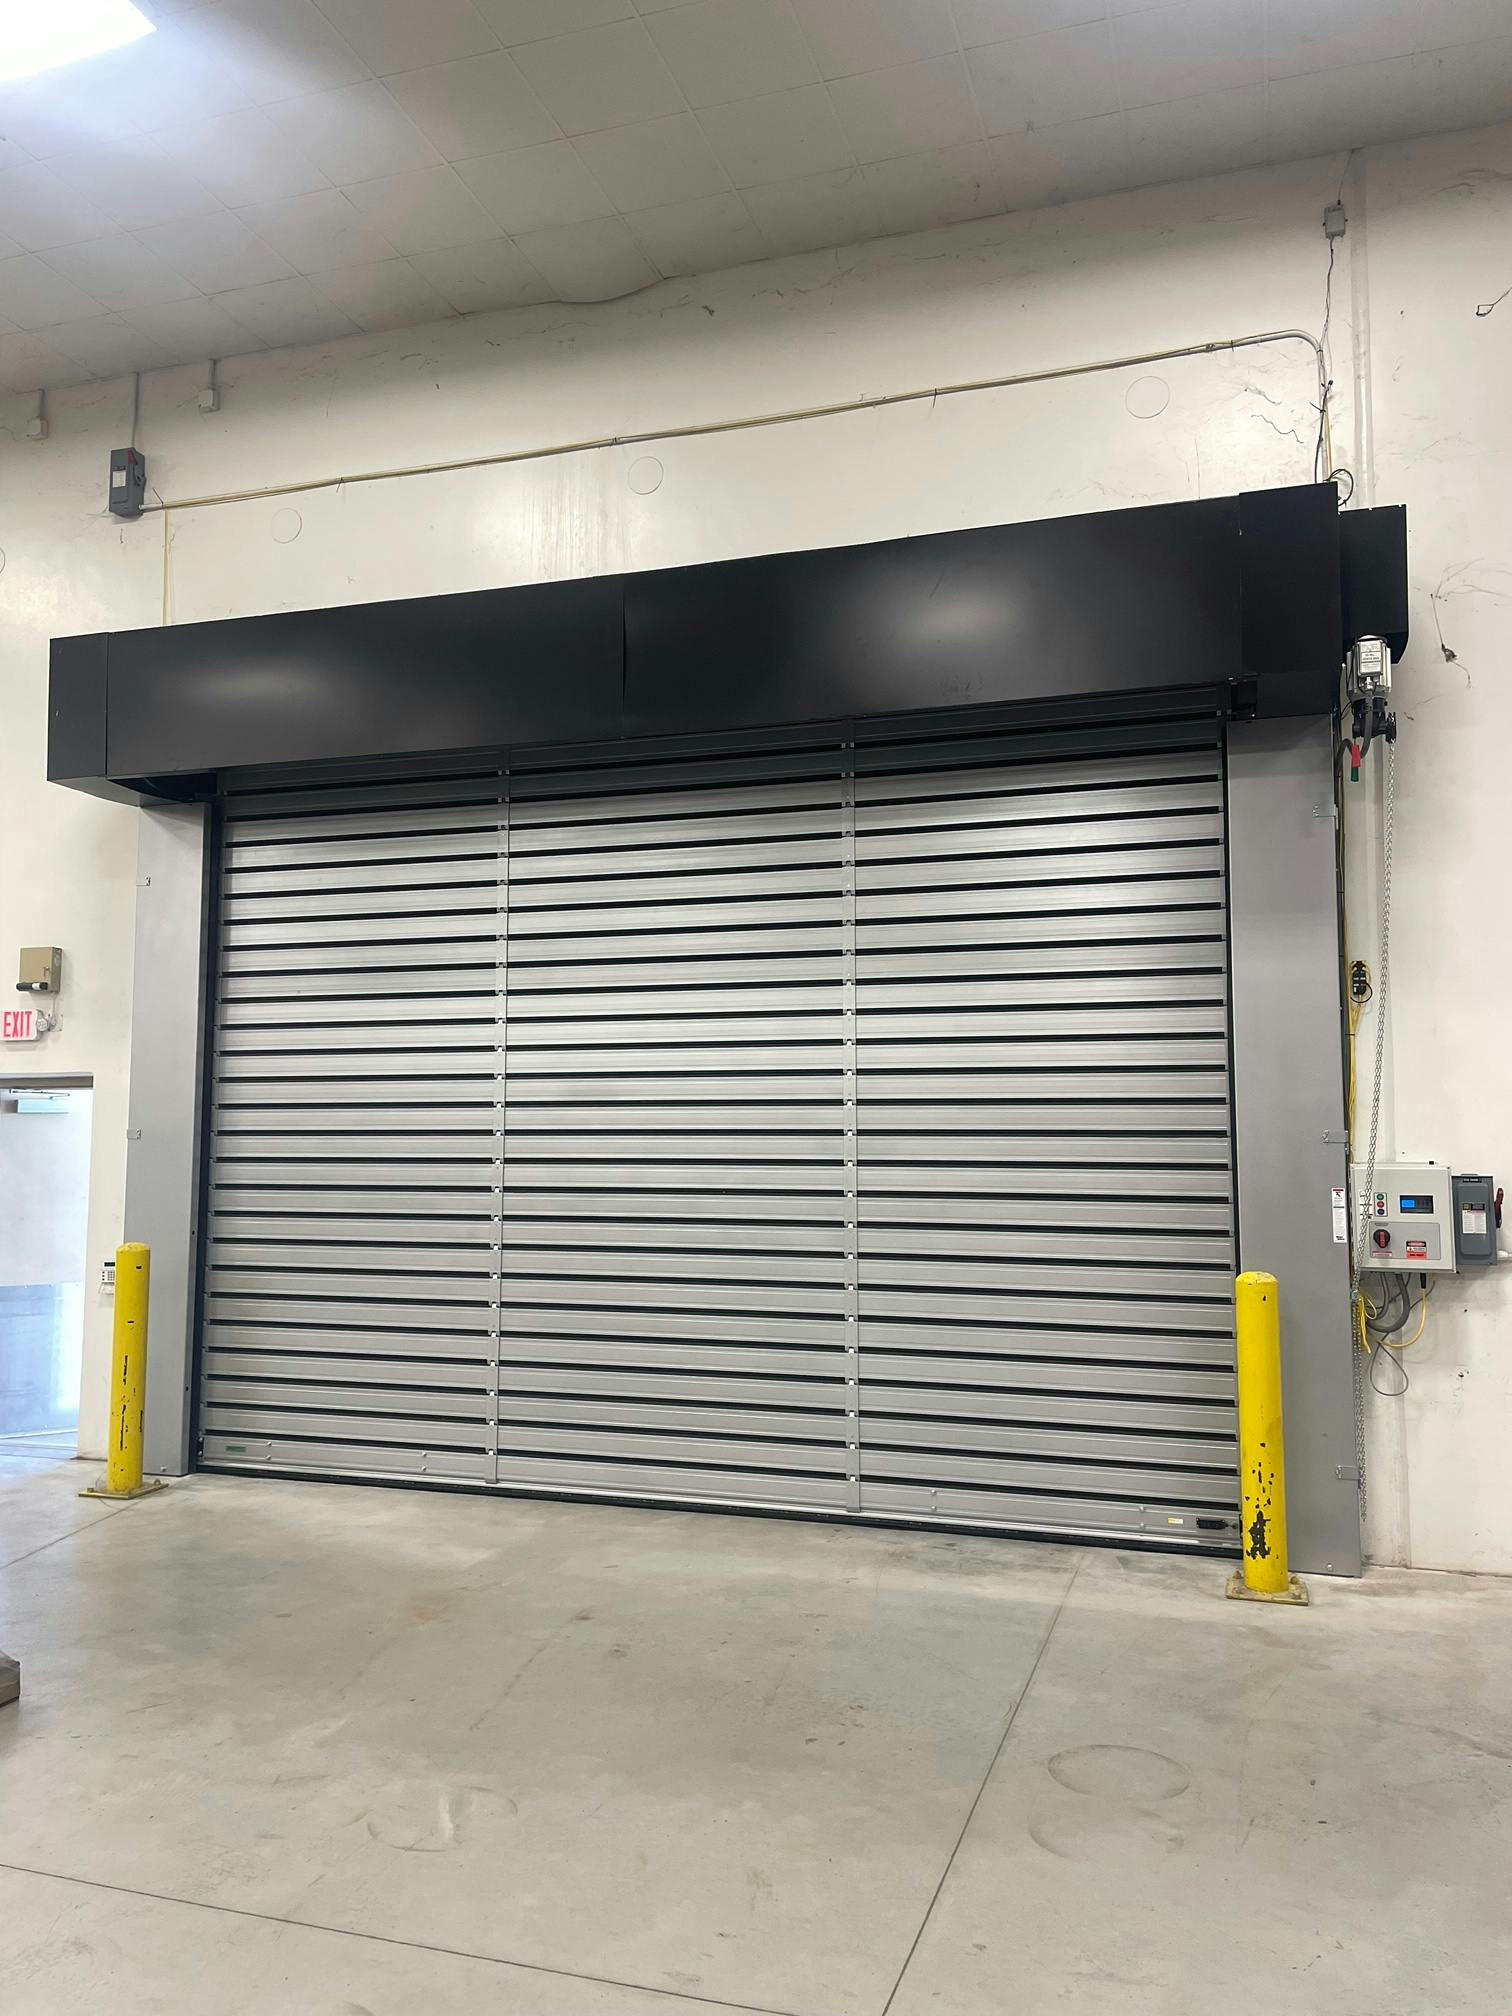 hurricane garage door for commercial buildings